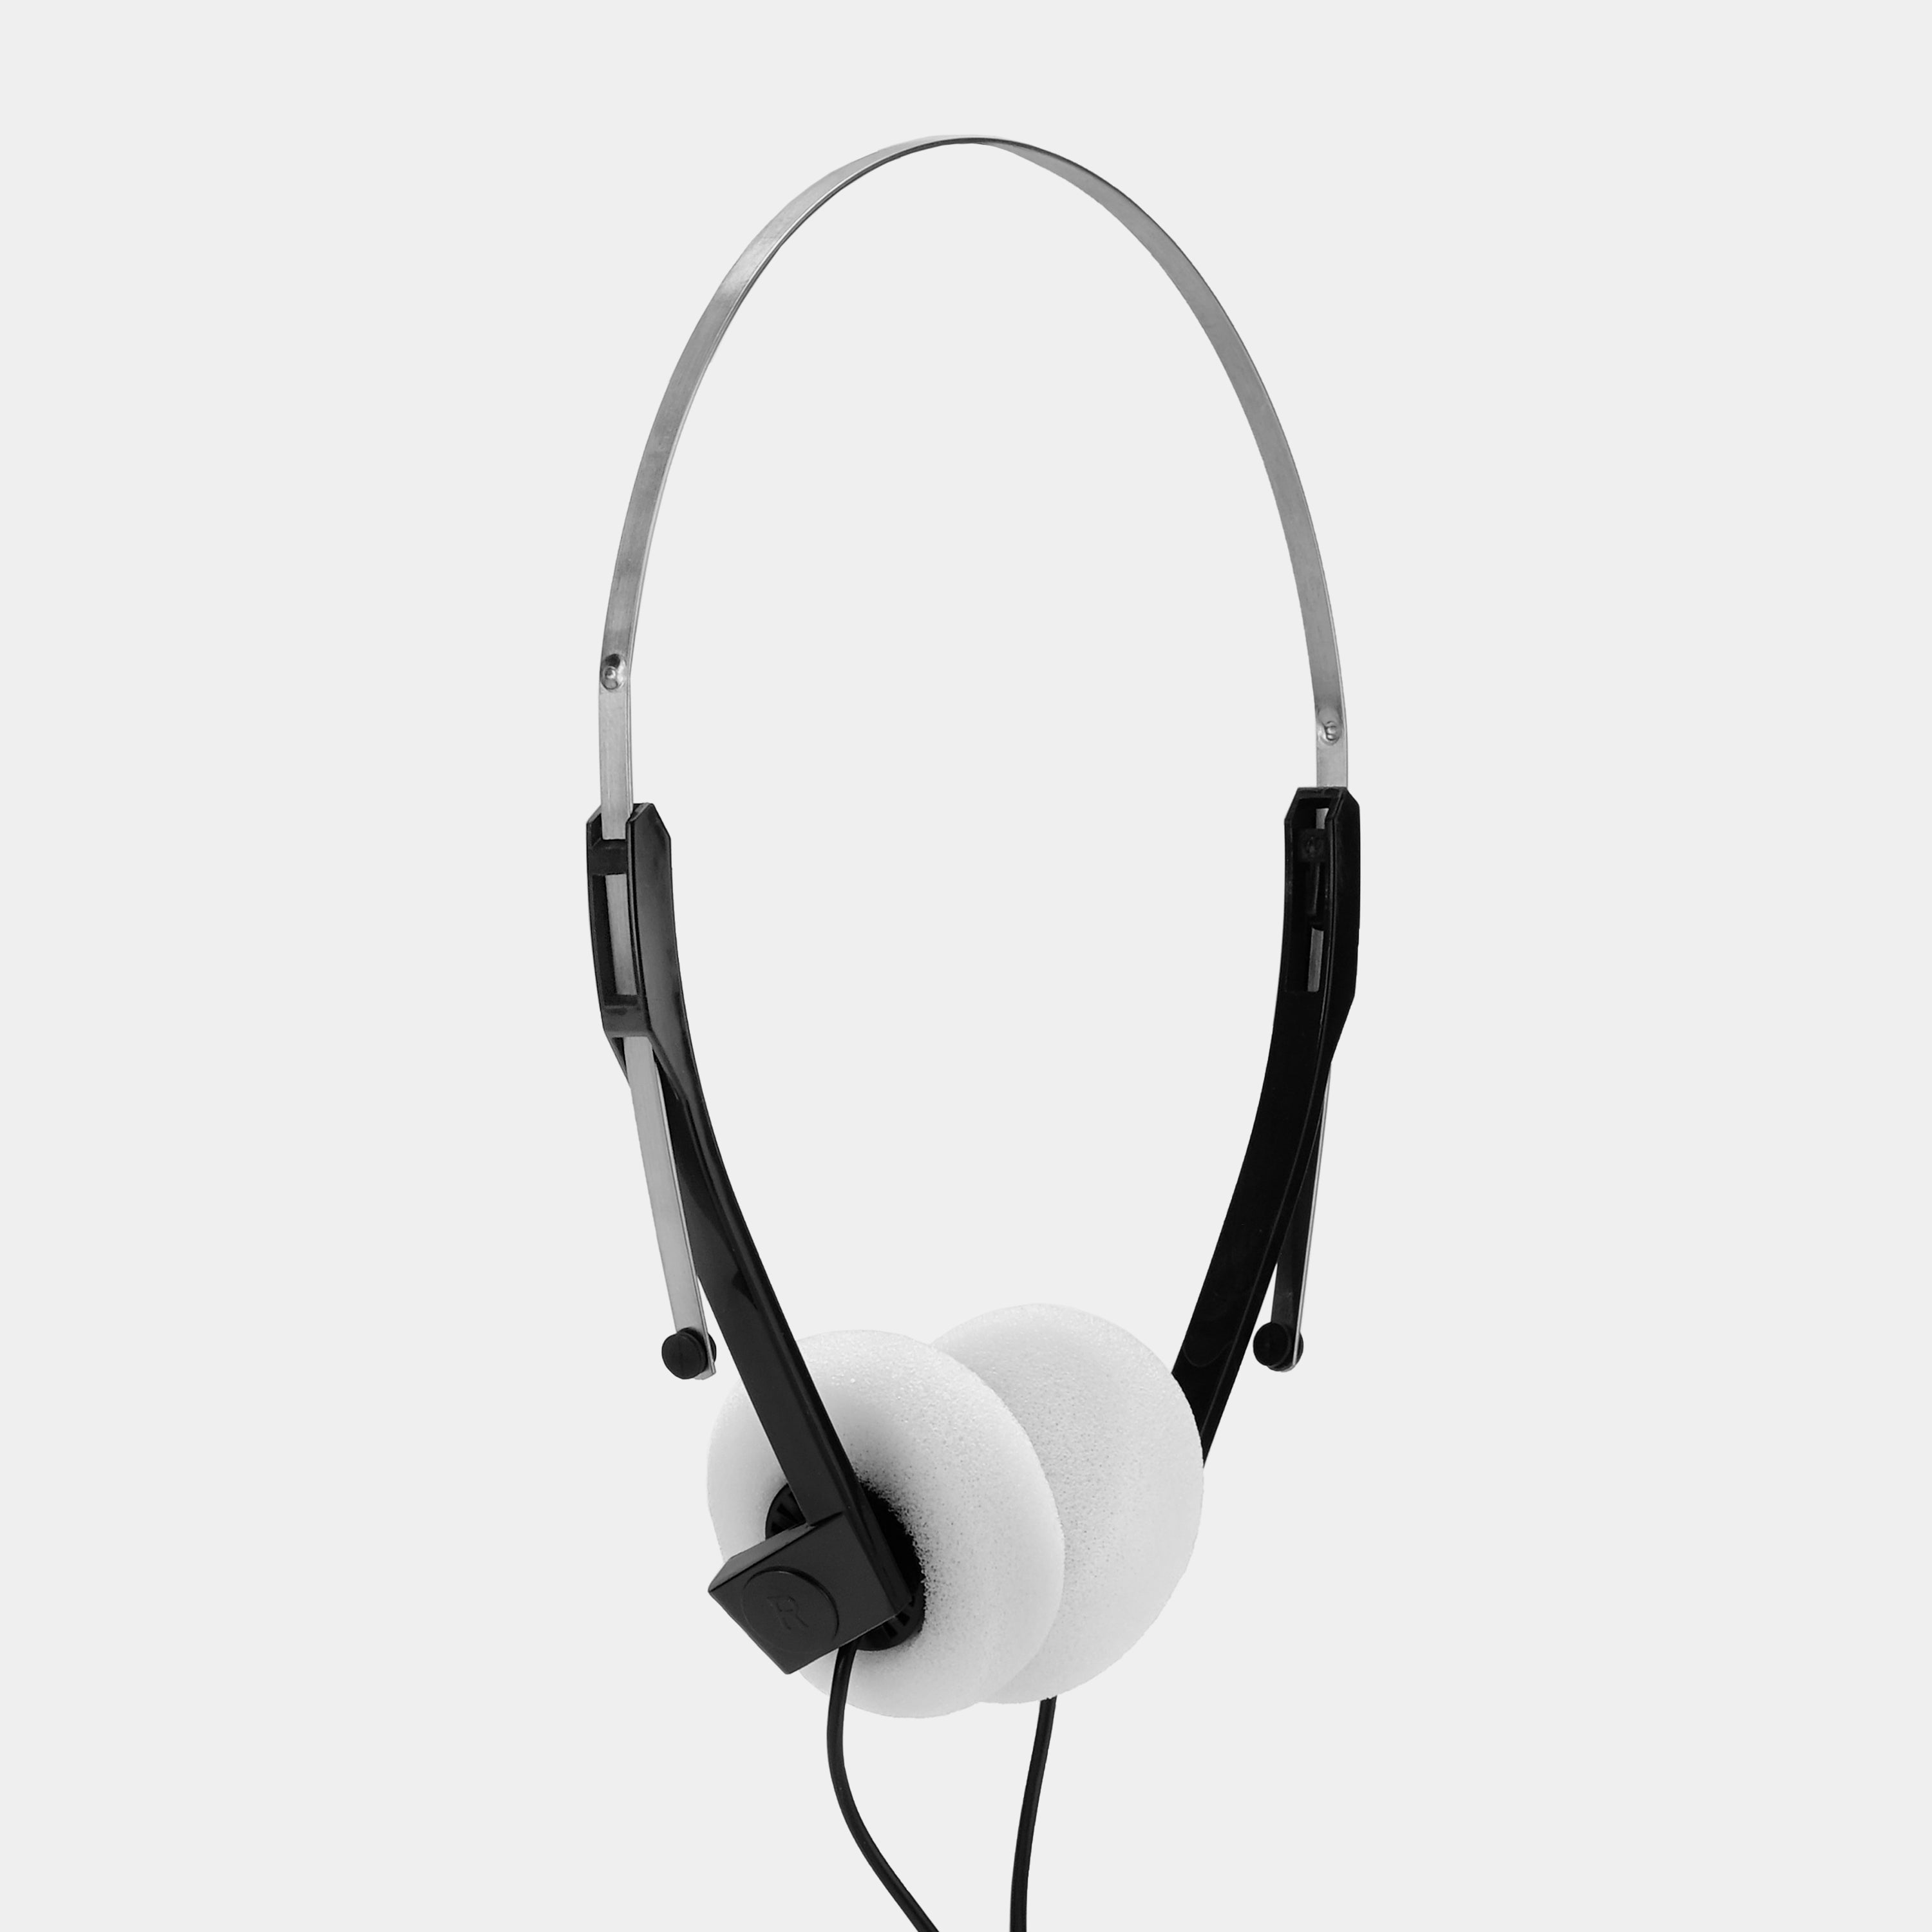 Retro Foam On-Ear Headphones